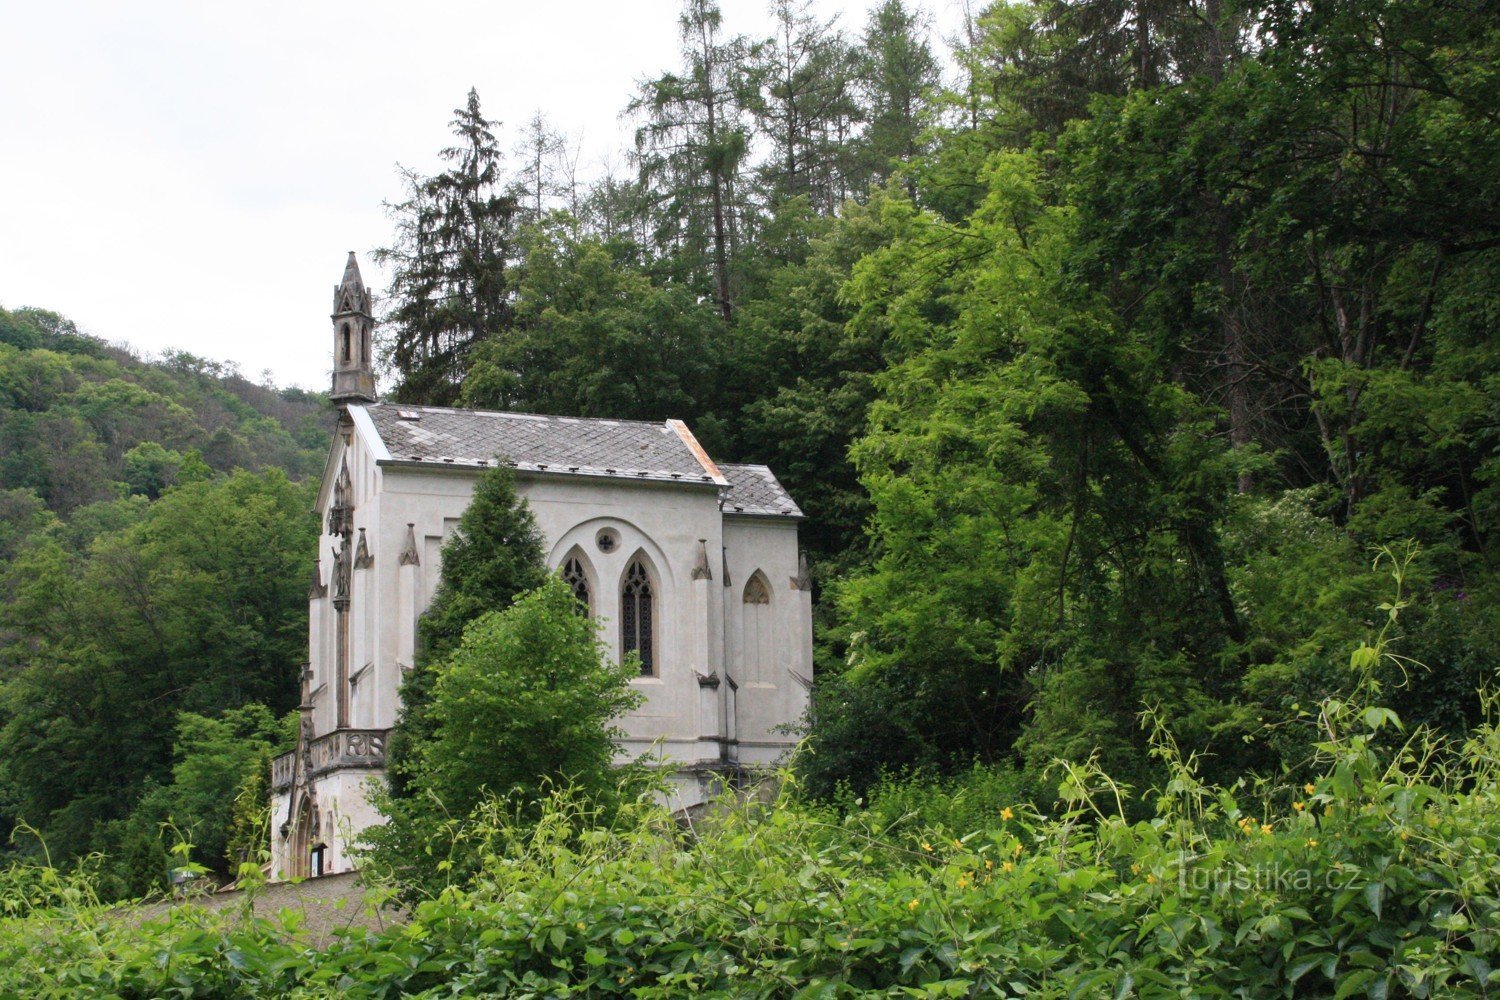 St. Jan pod Skalou ja hautausmaan kappeli - Pyhän Nikolauksen kappeli Maximilian